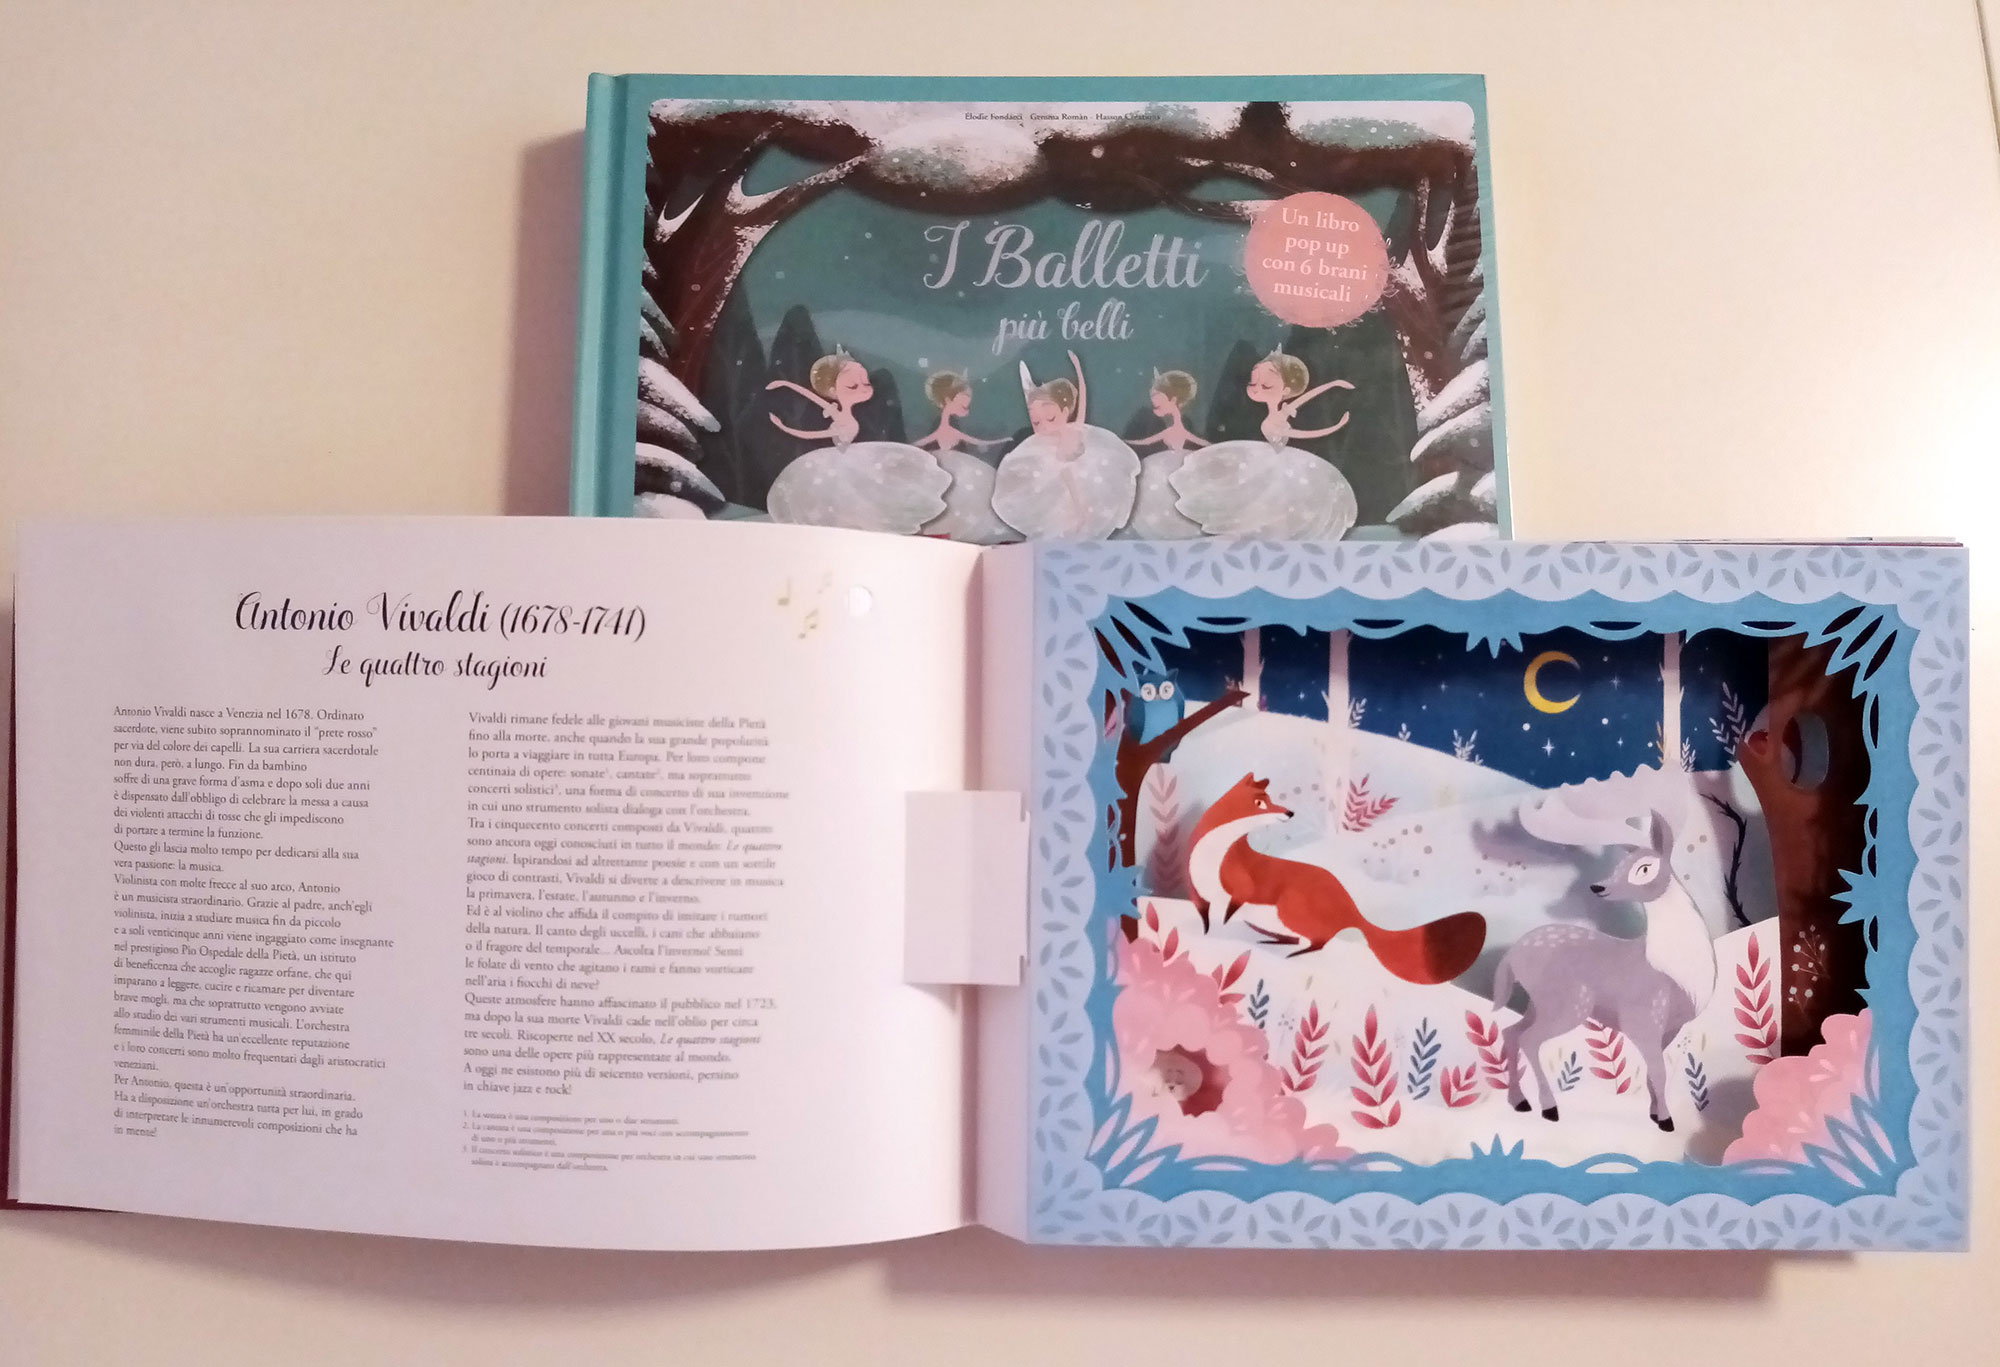 Libri sonori per bambini: i consigli in libreria - Matera Per Bambini